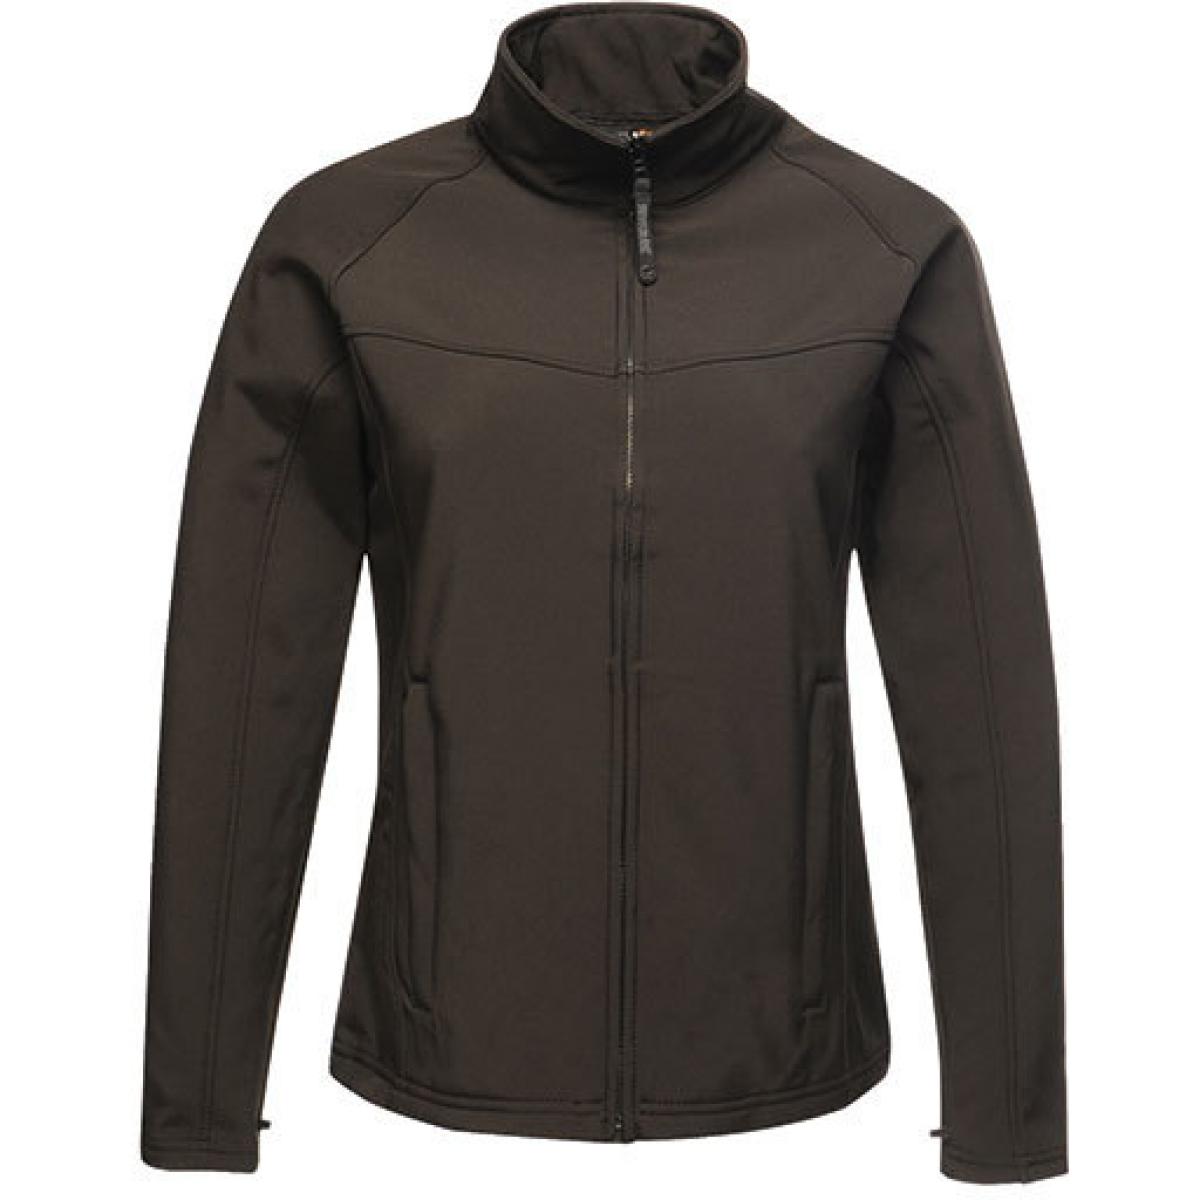 Hersteller: Regatta Herstellernummer: TRA645 Artikelbezeichnung: Damen Uproar Softshell Jacke Farbe: Black/Black